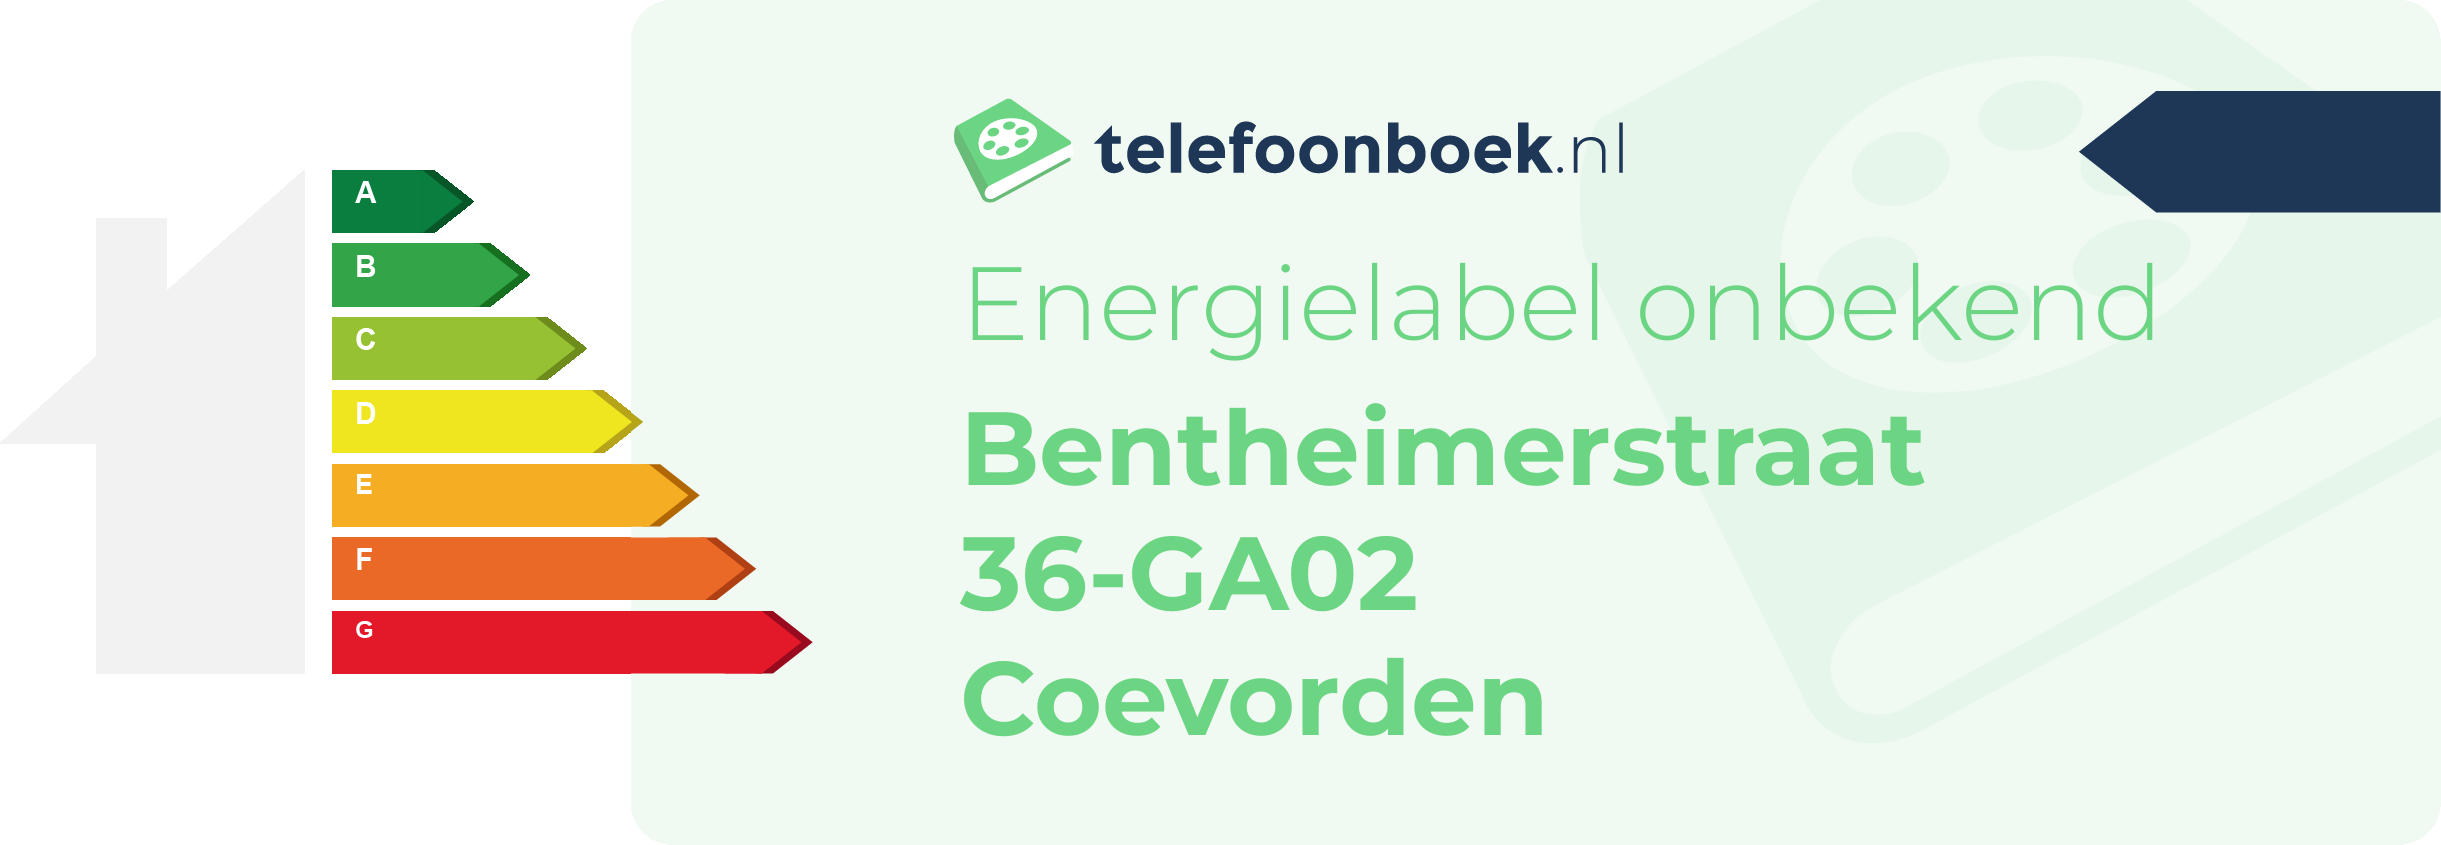 Energielabel Bentheimerstraat 36-GA02 Coevorden